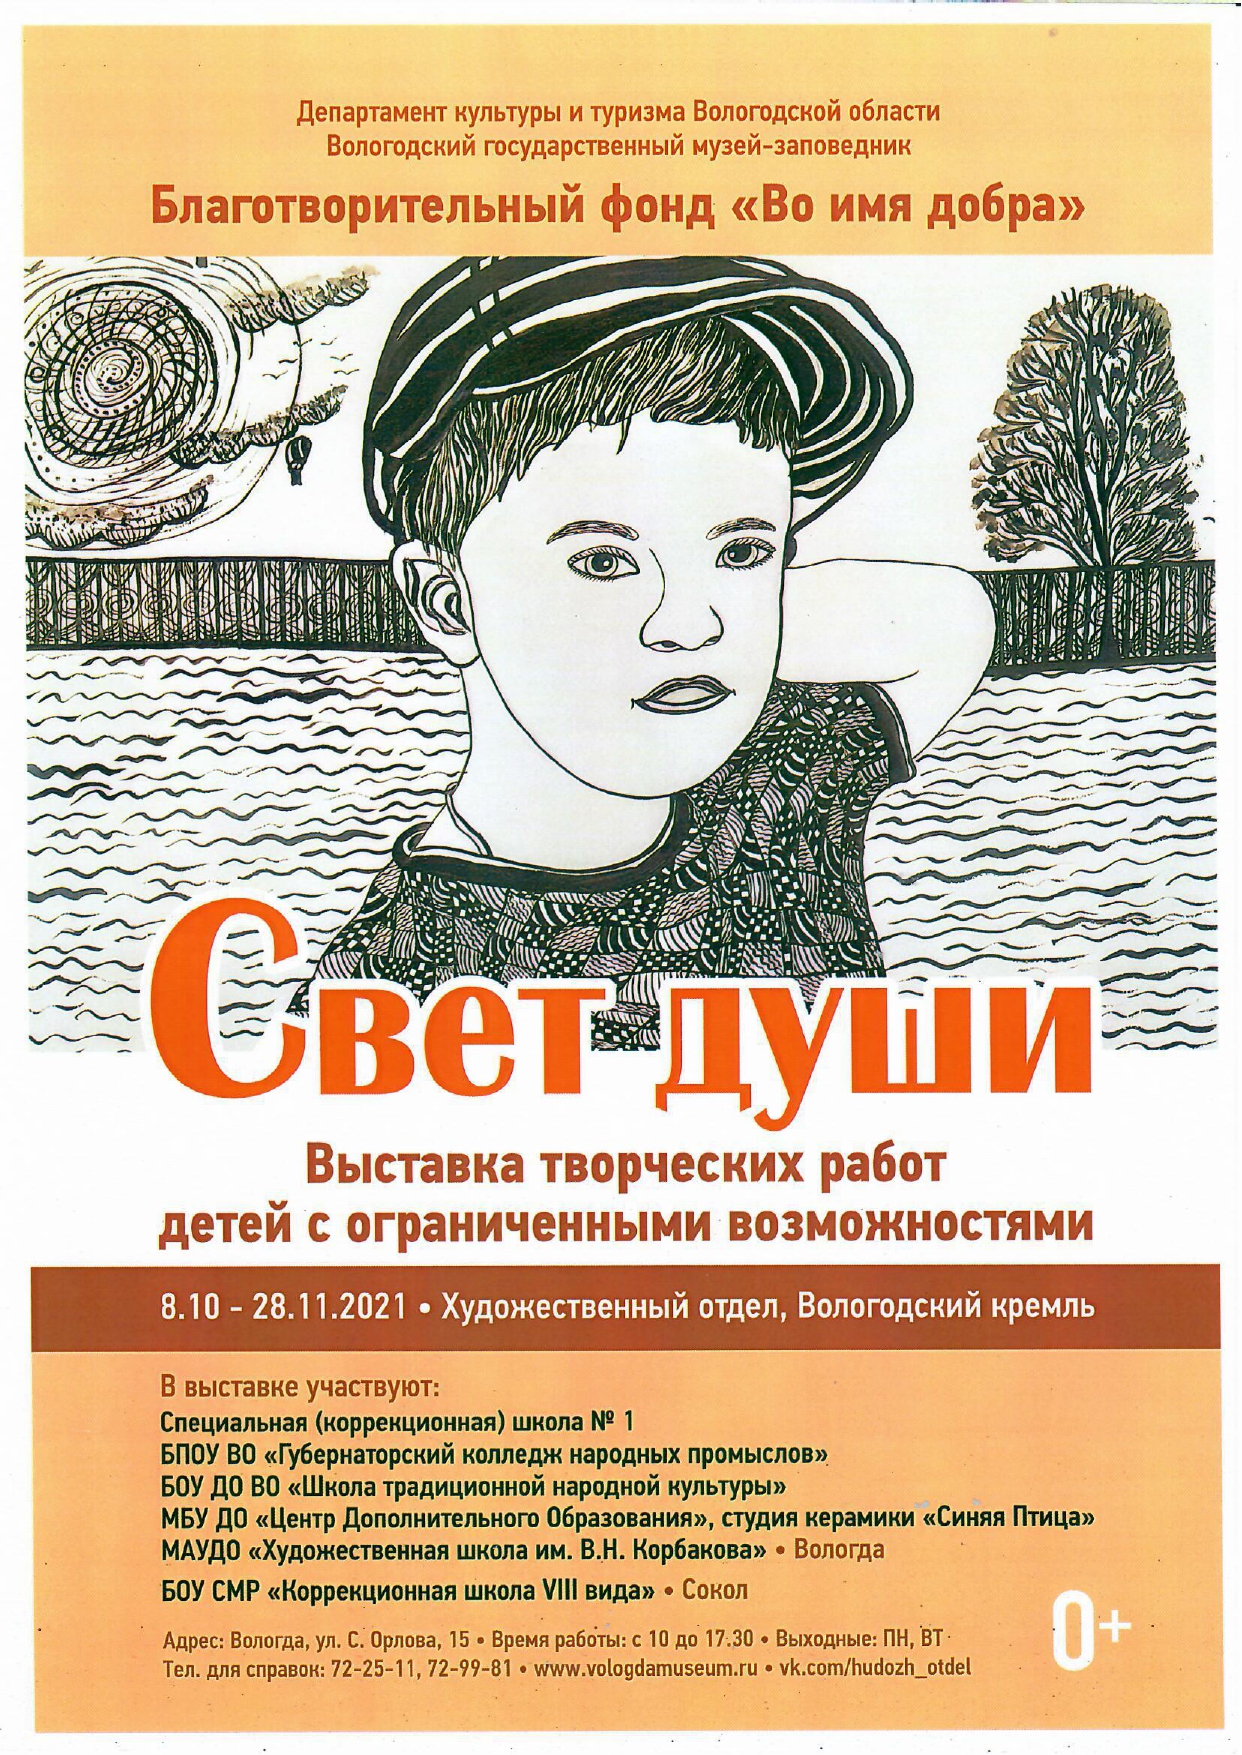 Художественный отдел Вологодского кремля приглашает посетить выставку творческих работ детей с ограниченными возможностями здоровья "Свет души"